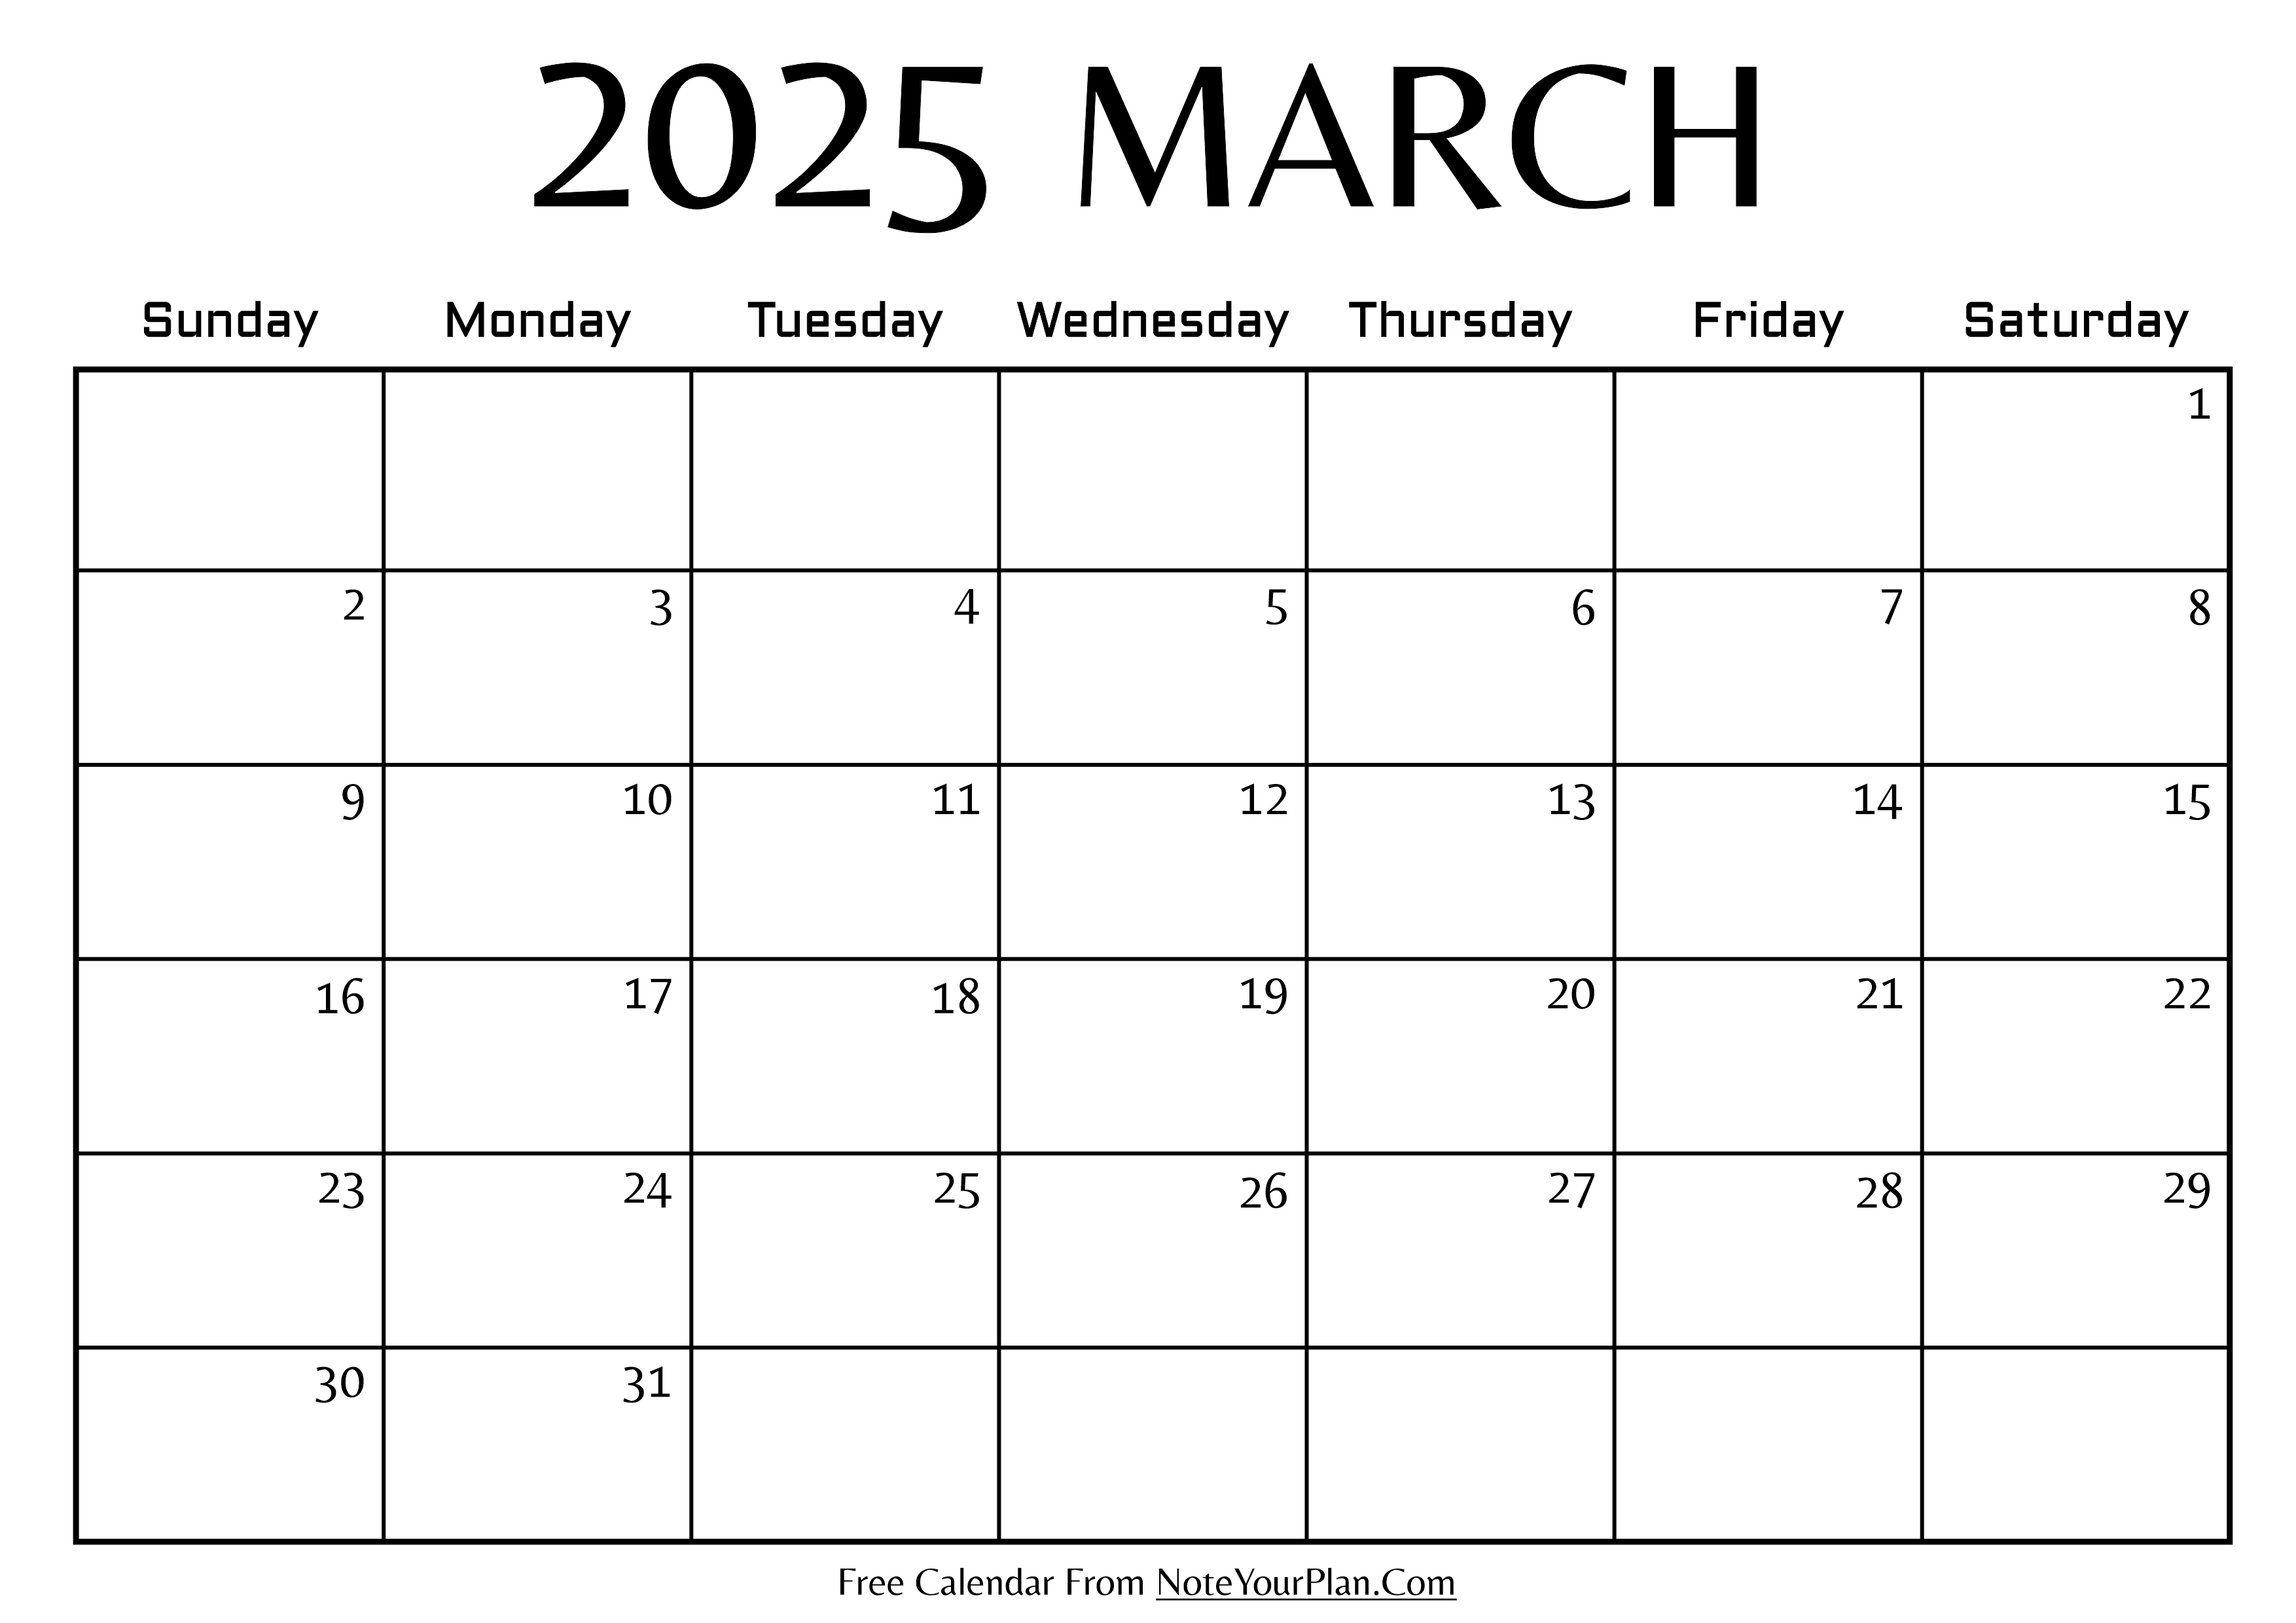 March 2025 Calendar Template